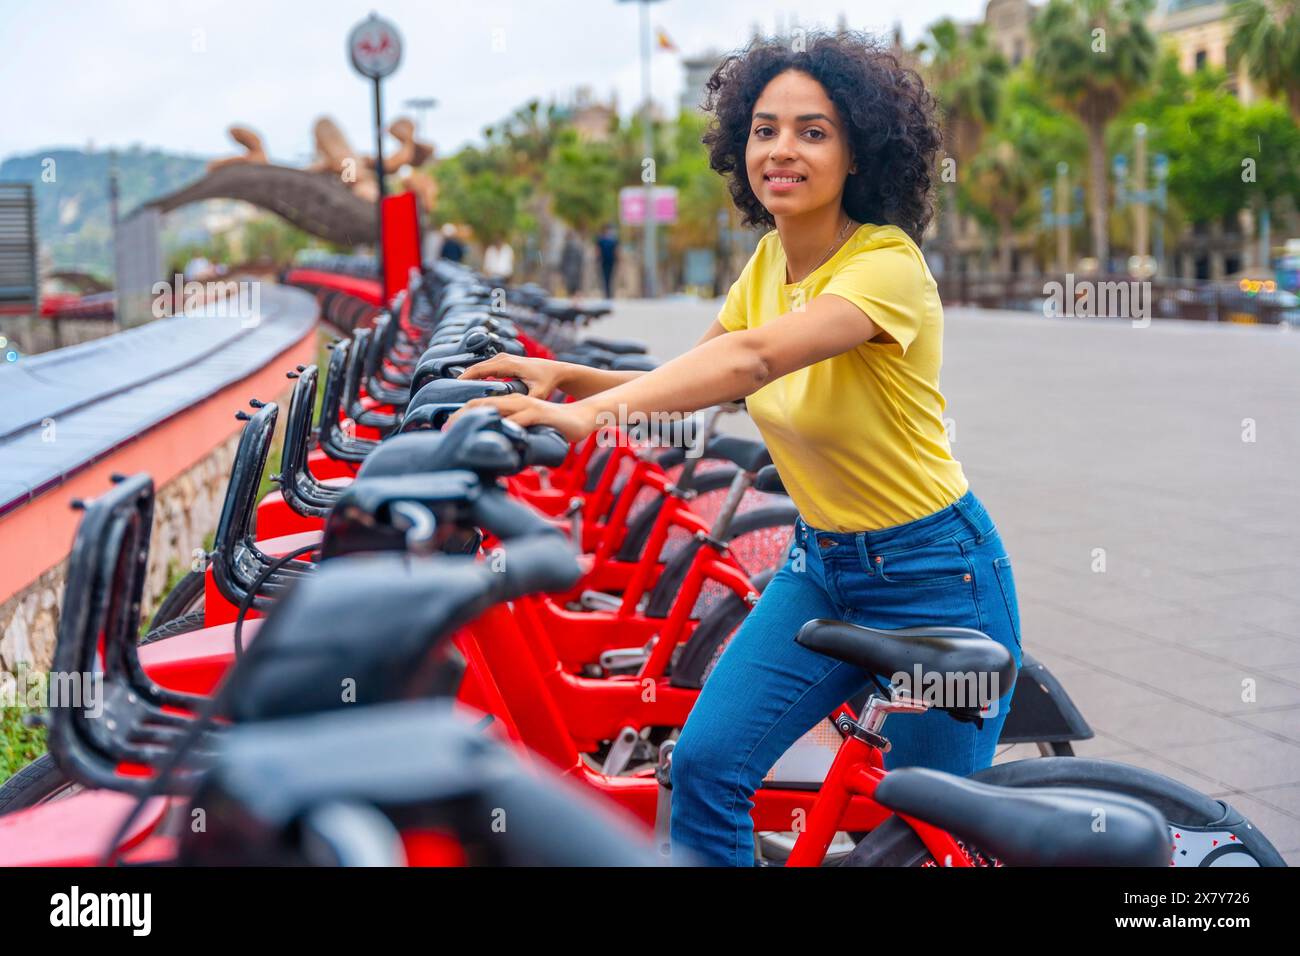 Ritratto di una giovane donna latina sorridente alla macchina fotografica mentre utilizza il servizio di noleggio bici pubblico Foto Stock